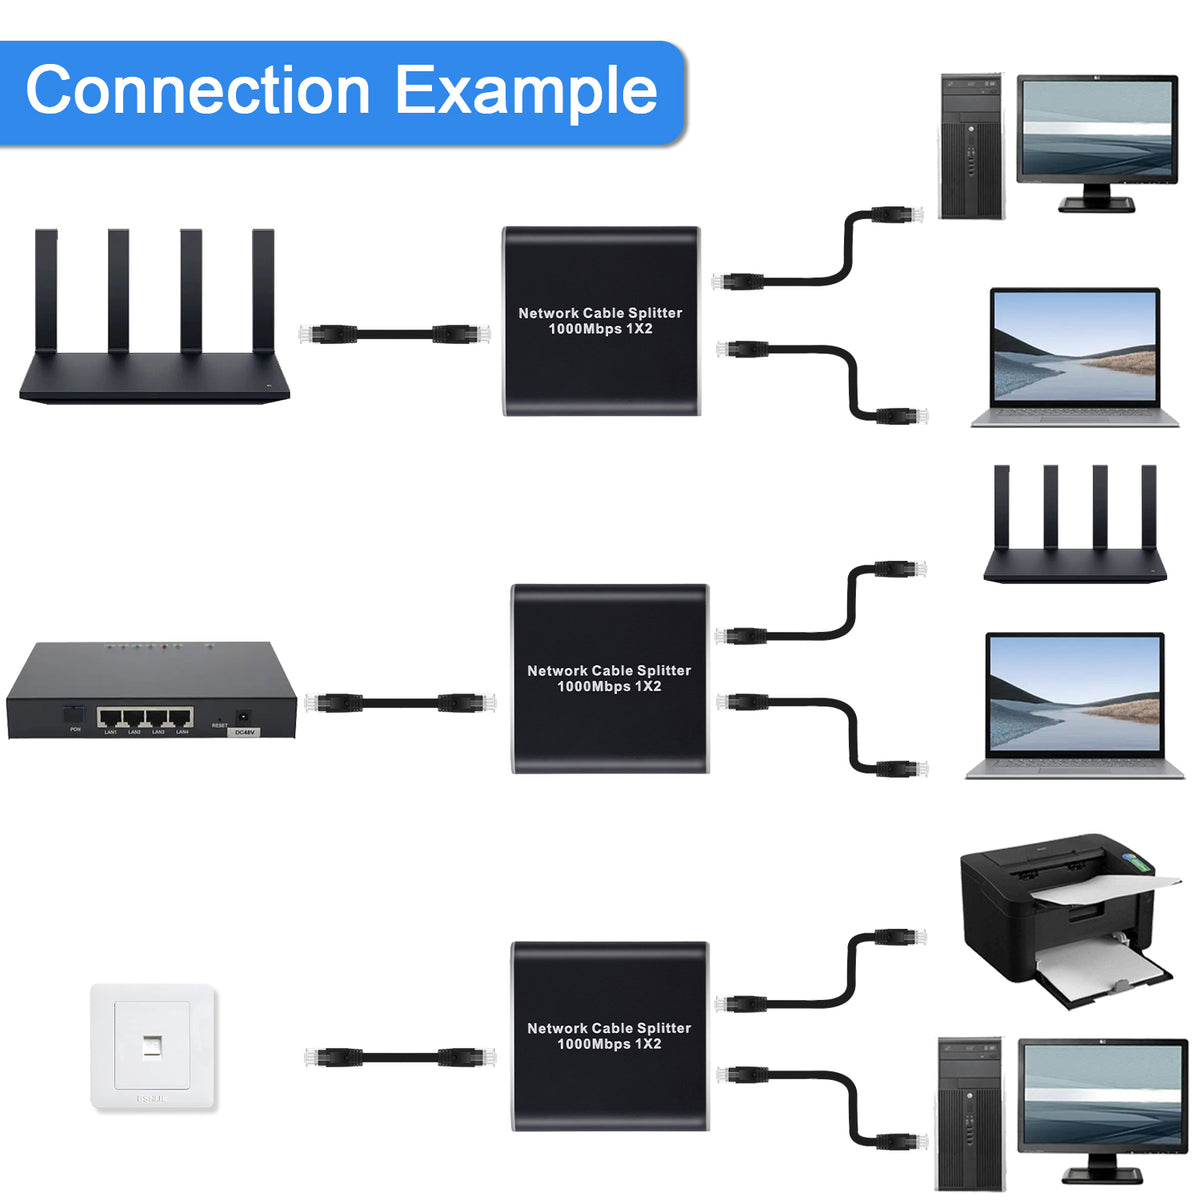 Tendak Ethernet Splitter 1 to 2, 1000Mbps Ethernet Splitter High Speed, Gigabit RJ45 Internet Splitter with USB Power Cable, Network LAN Splitter for Cat5/5e/6/7/8 [2 Devices Simultaneous Networking]